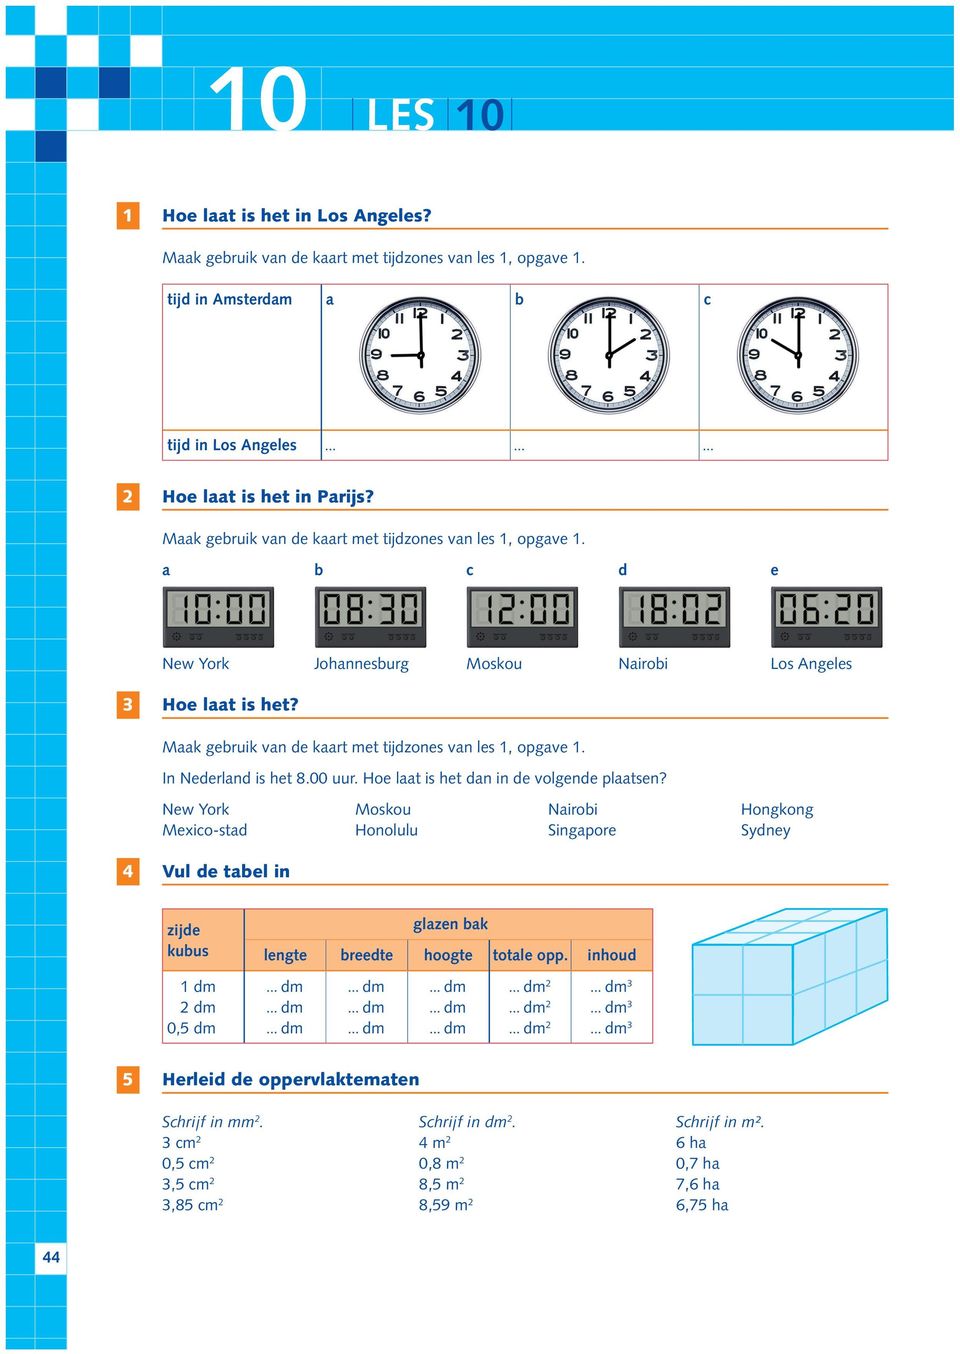 Maak gebruik van de kaart met tijdzones van les 1, opgave 1. In Nederland is het 8.00 uur. Hoe laat is het dan in de volgende plaatsen?